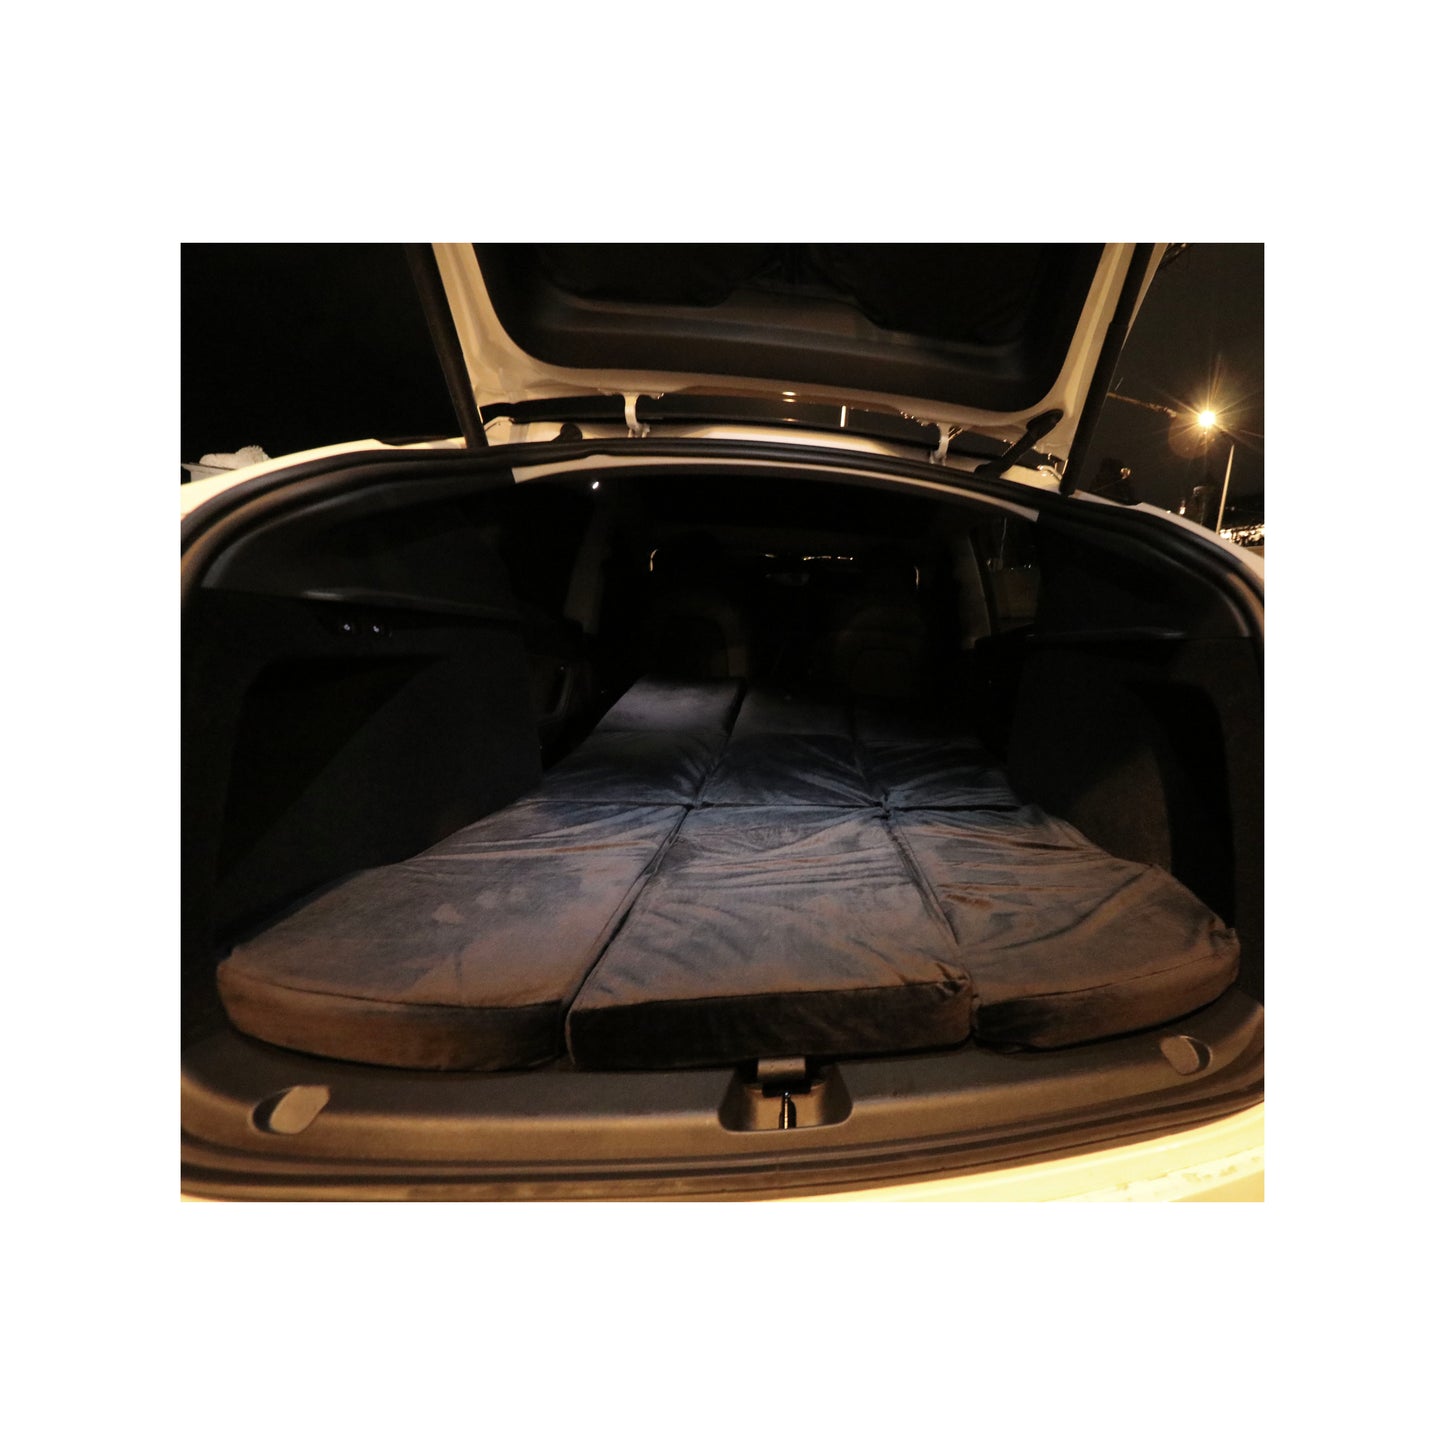 Salteaua EV-MATS pentru Tesla Model Y și geanta de transport este o saltea premium din spumă cu memorie, se potrivește perfect dimensiunilor Tesla Model Y, oferă confort perfect pentru somn și poate fi depozitată în portbagaj